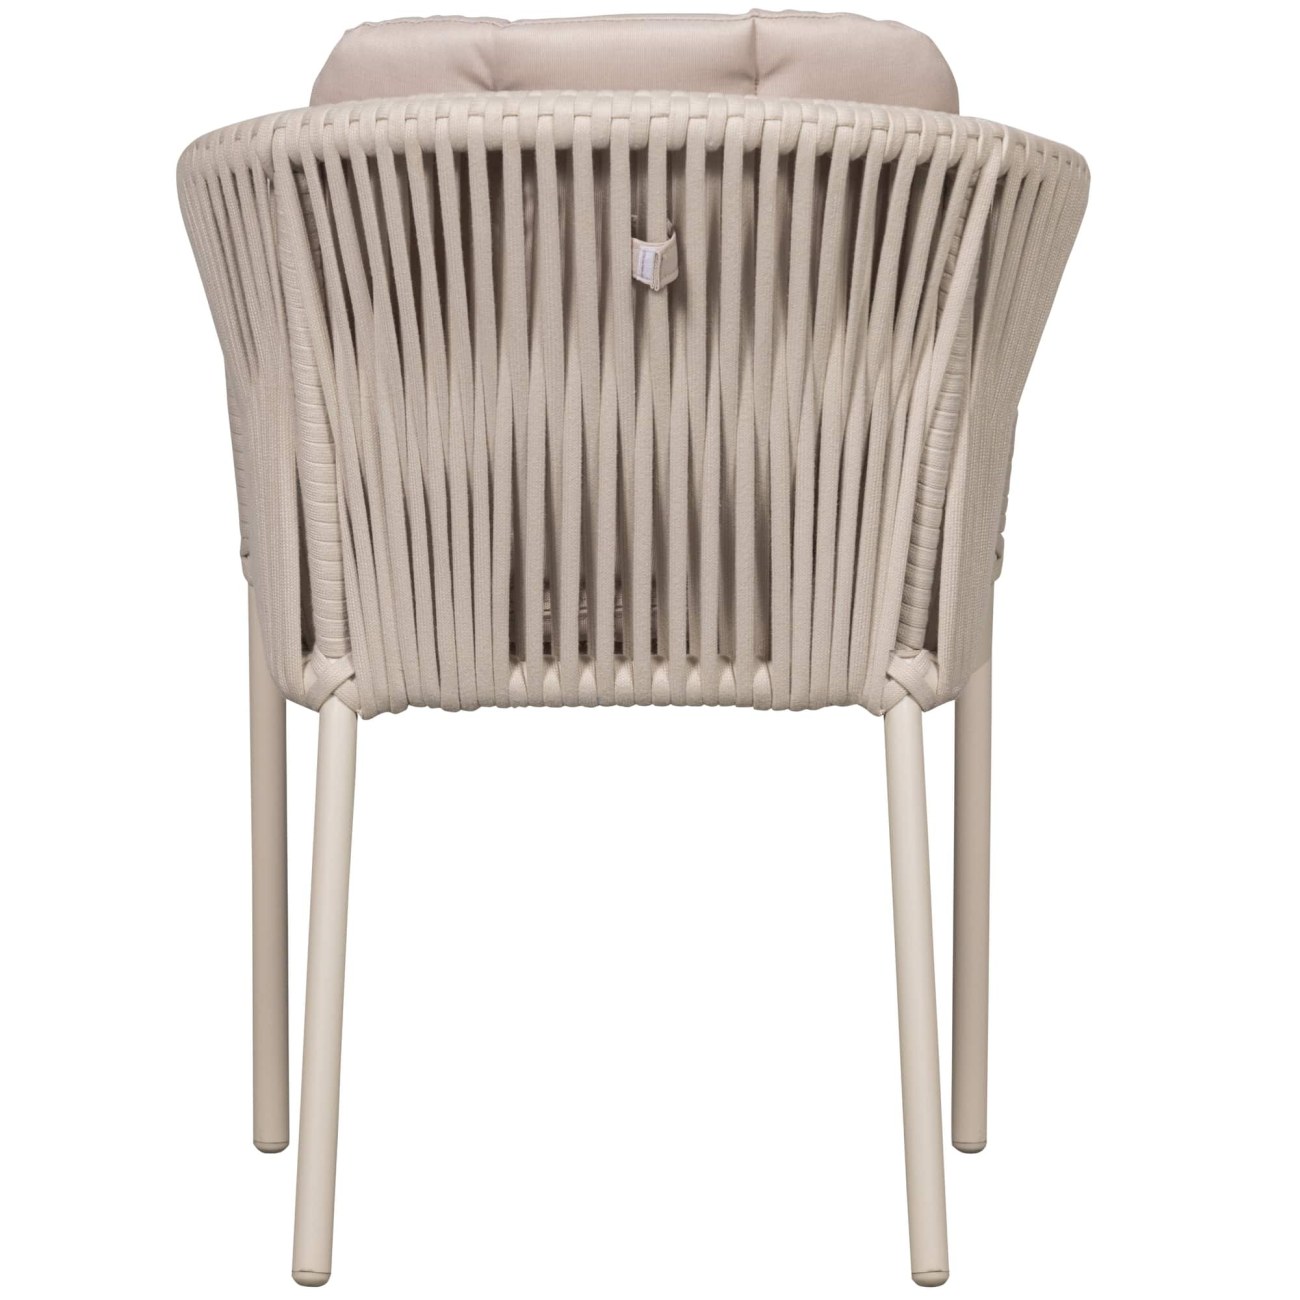 Der Gartenstuhl Yukon überzeugt mit seinem modernen Design. Gefertigt wurde er aus geflochtenem Tauwerk, welches einen hellgrauen Farbton besitzt. Das Gestell ist aus Aluminium und hat eine hellgraue Farbe. Der Stuhl besitzt eine Sitzhöhe von 50 cm.